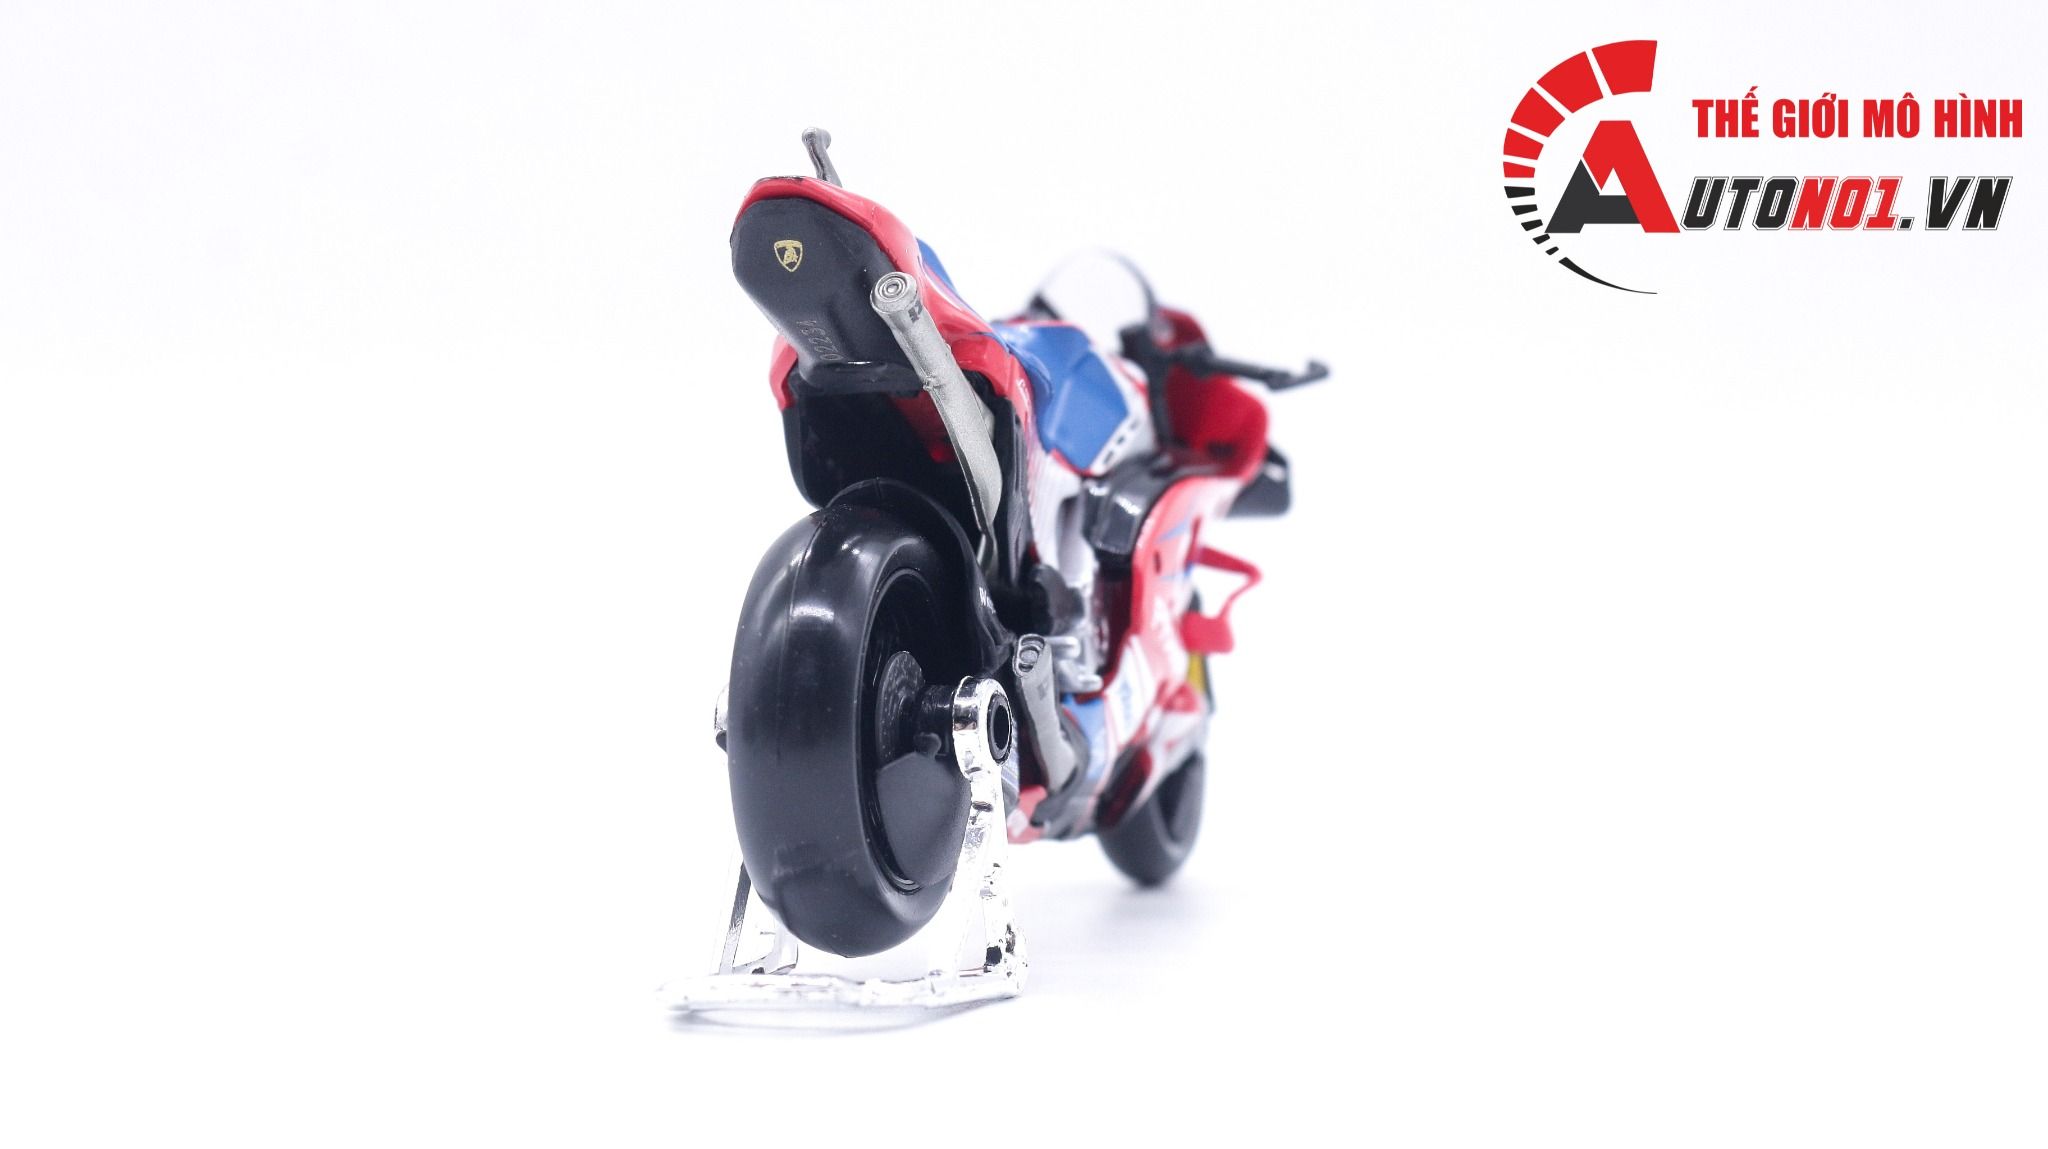  Mô hình xe mô tô GP Ducati Desmoscidici Pramac Racing 2021 tỉ lệ 1:18 Maisto 8124 